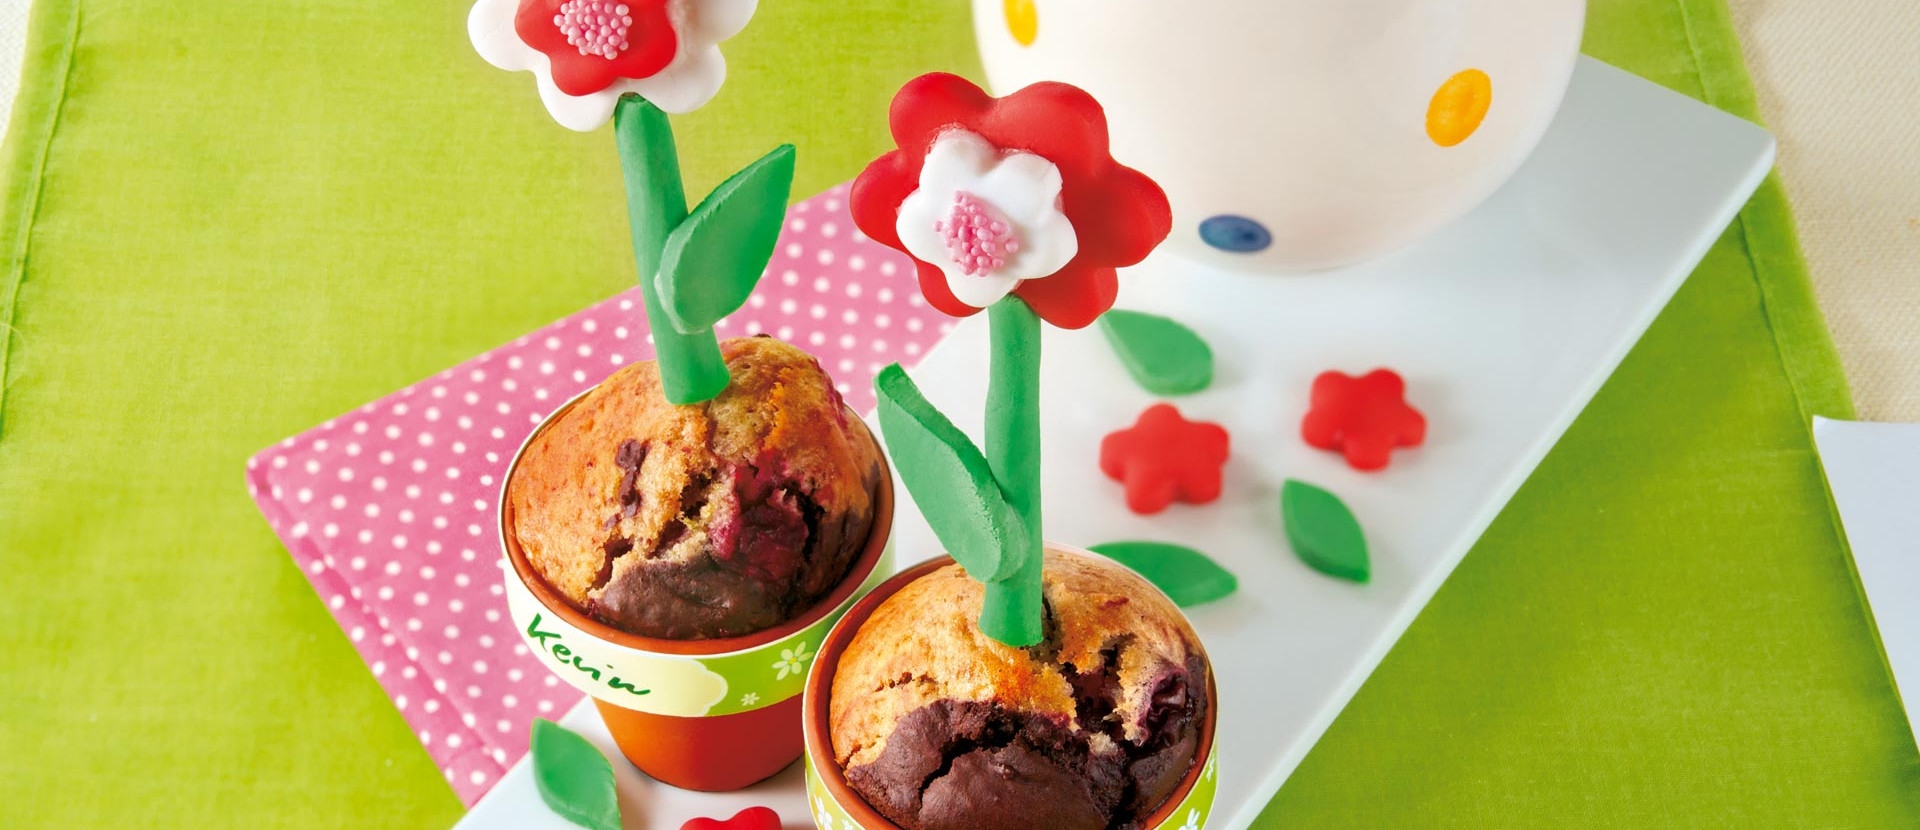 Muffins mit Kirschen in Blumentöpfen